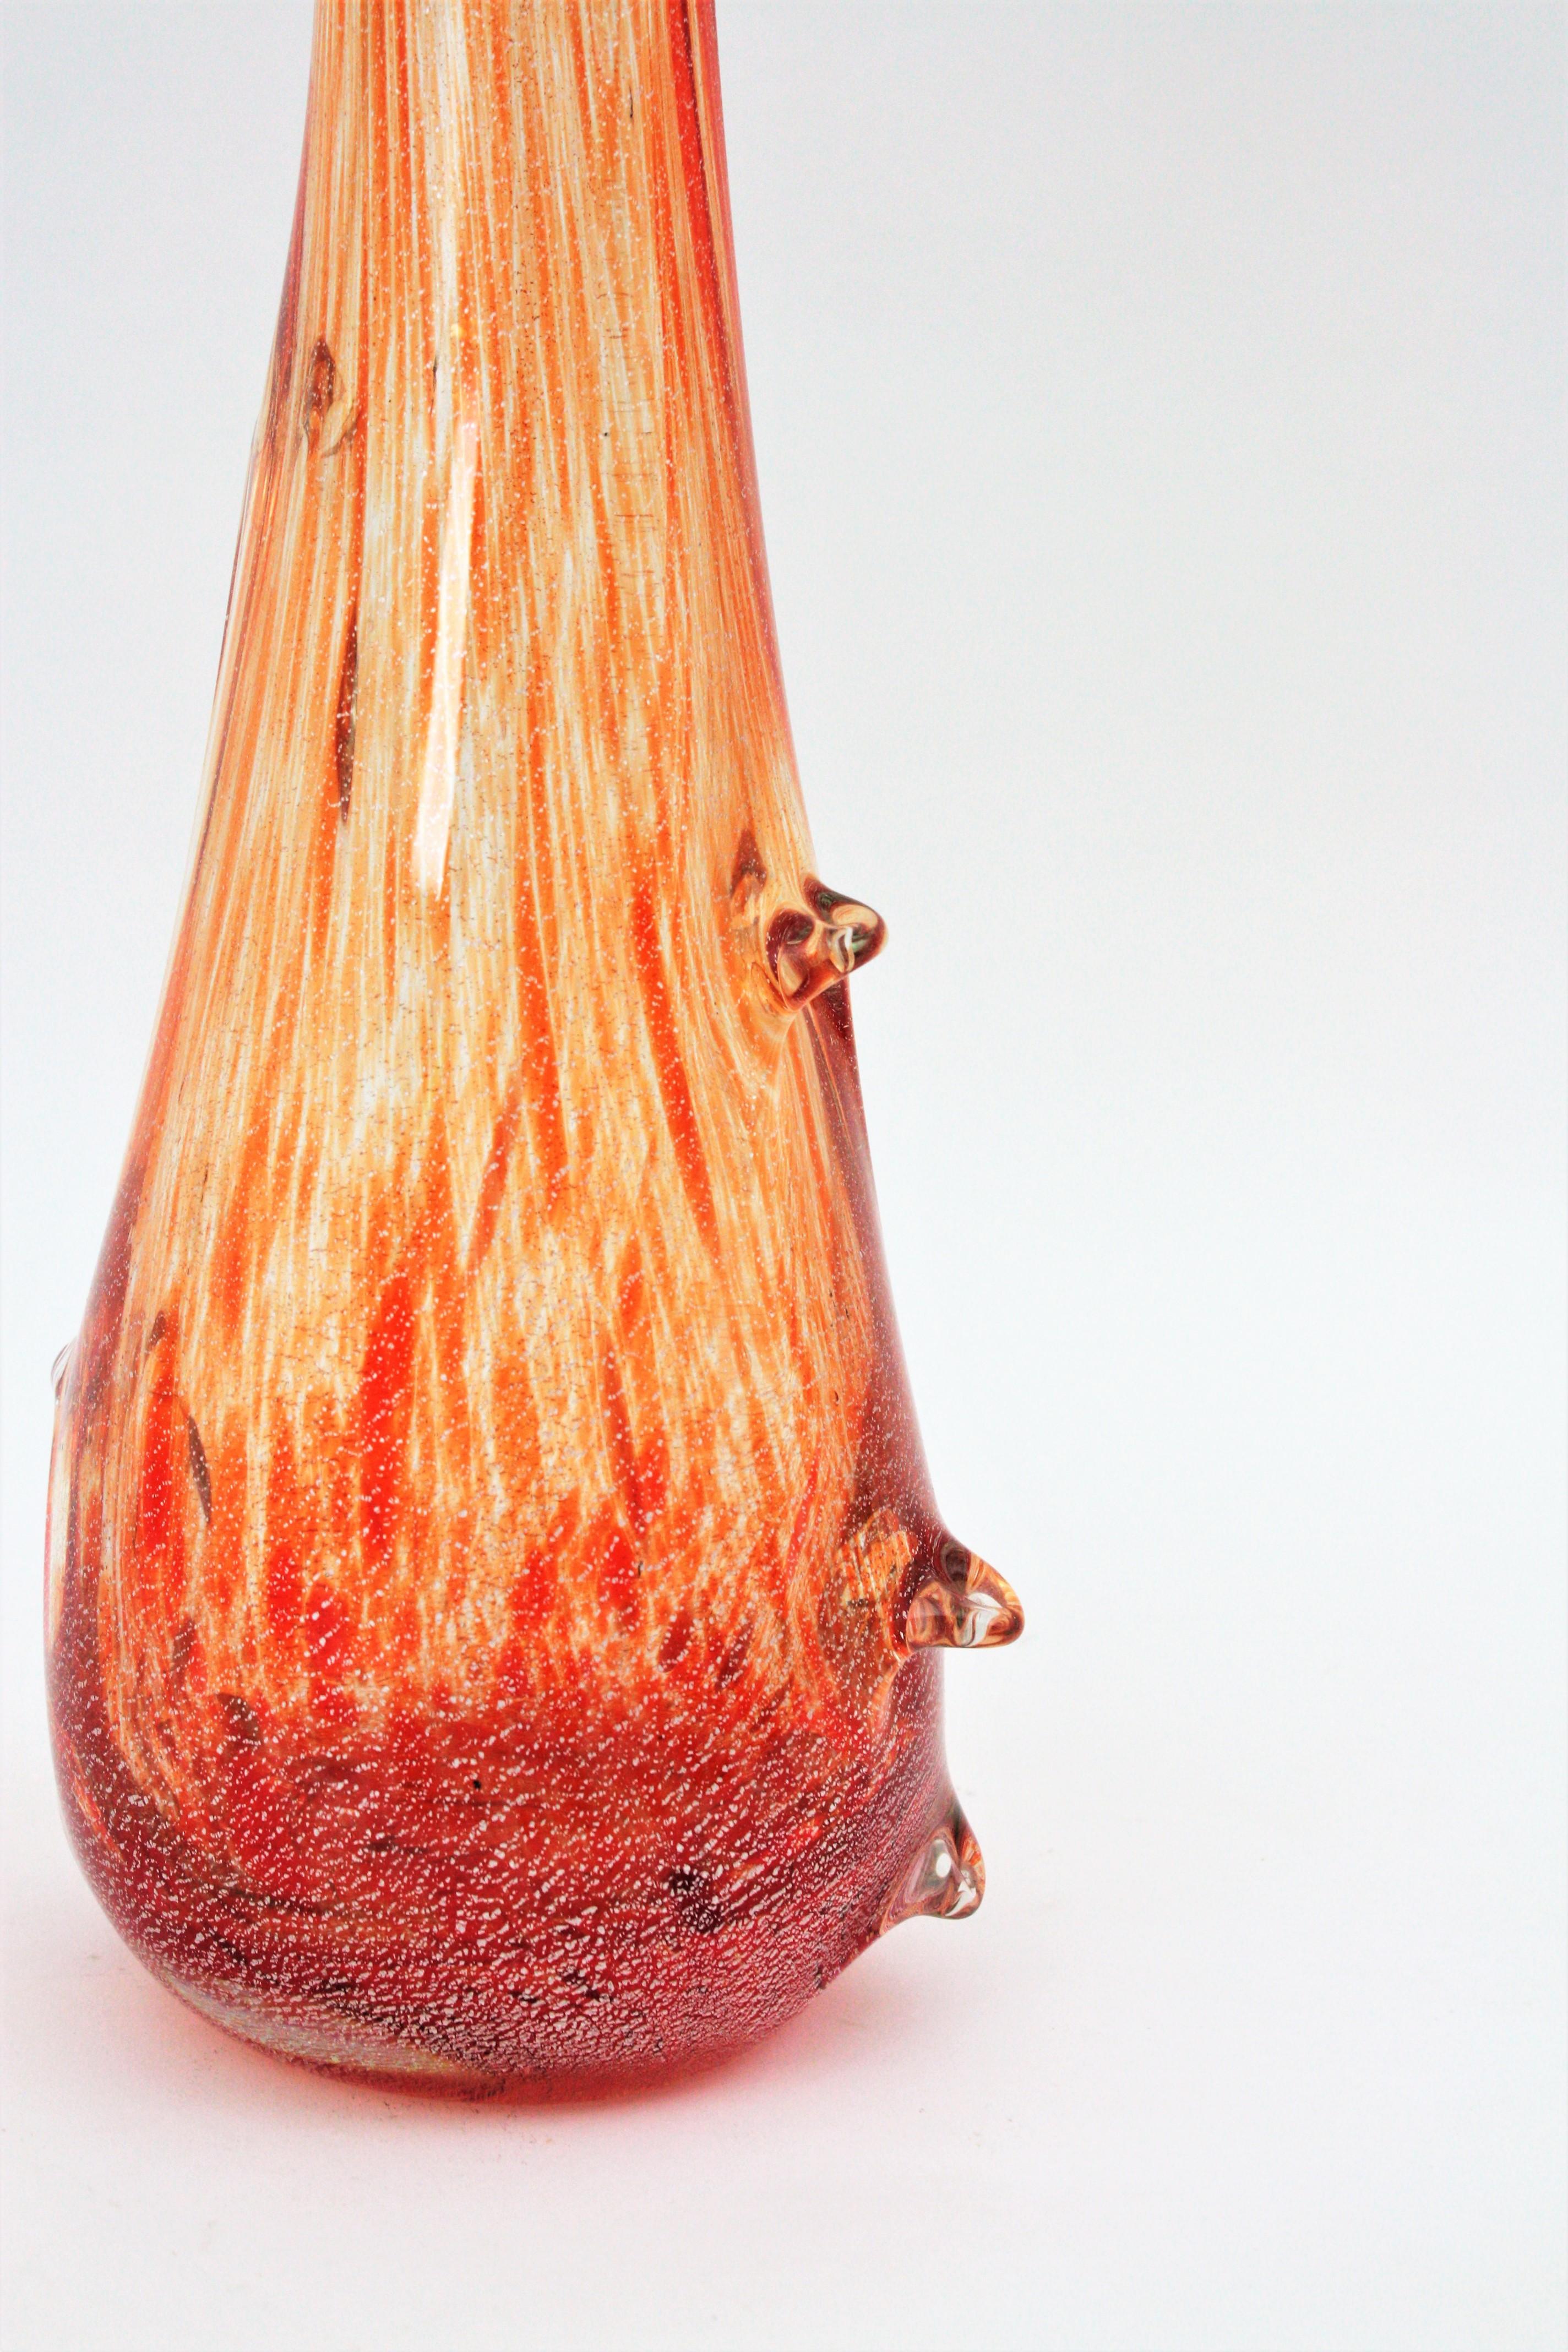 Seguso Vetri d'Arte Orange & Clear Striped Murano Glass Vase with Silver Flecks 1